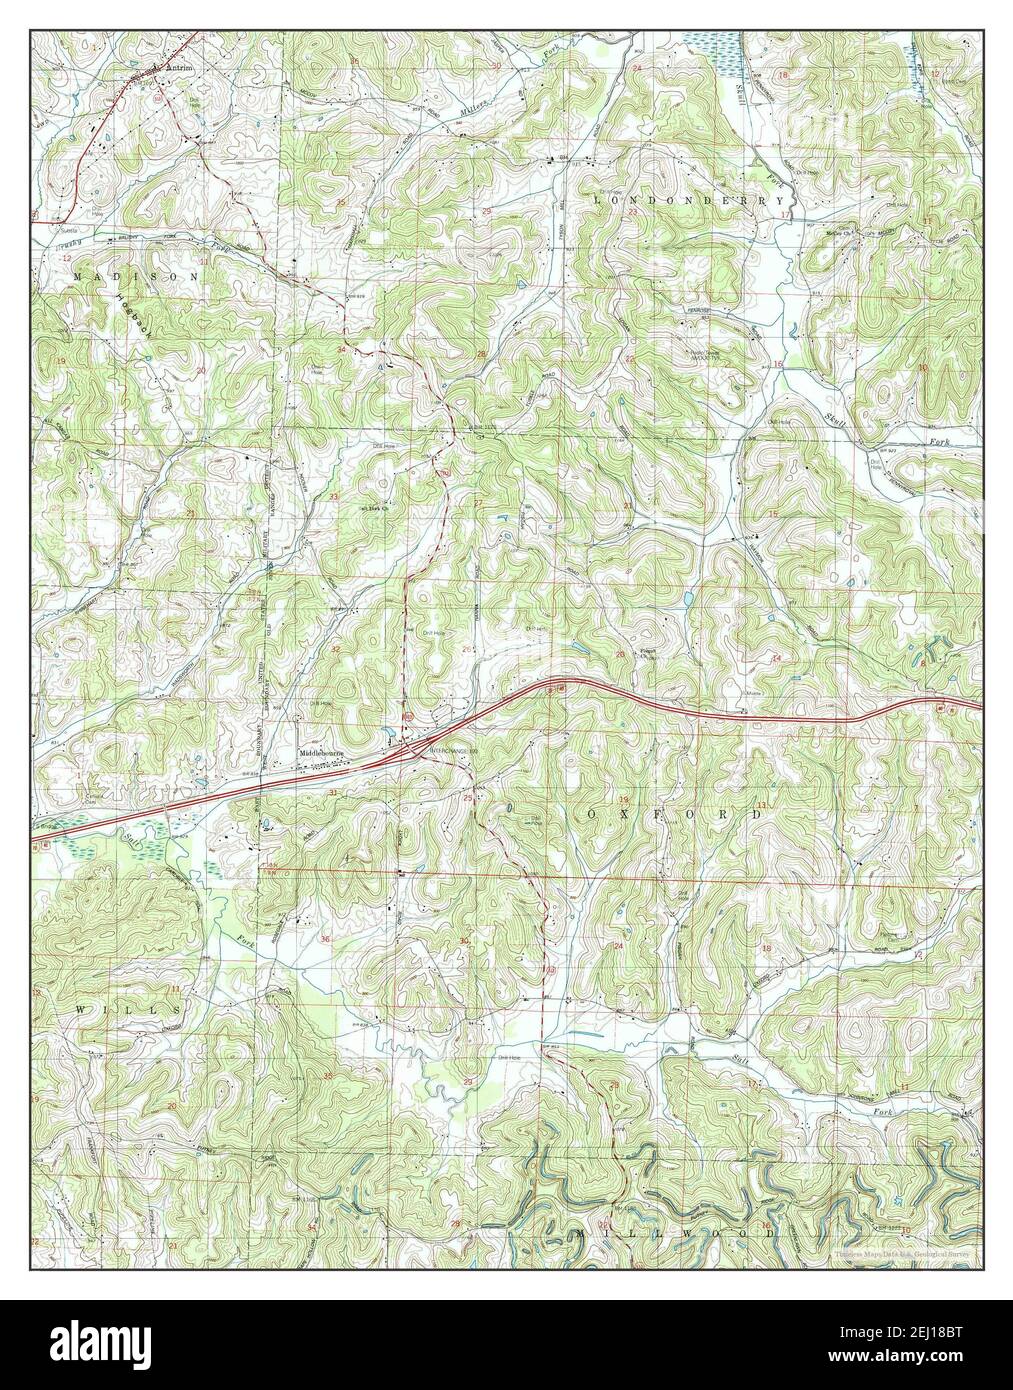 Antrim, Ohio, Karte 1994, 1:24000, Vereinigte Staaten von Amerika von Timeless Maps, Daten U.S. Geological Survey Stockfoto